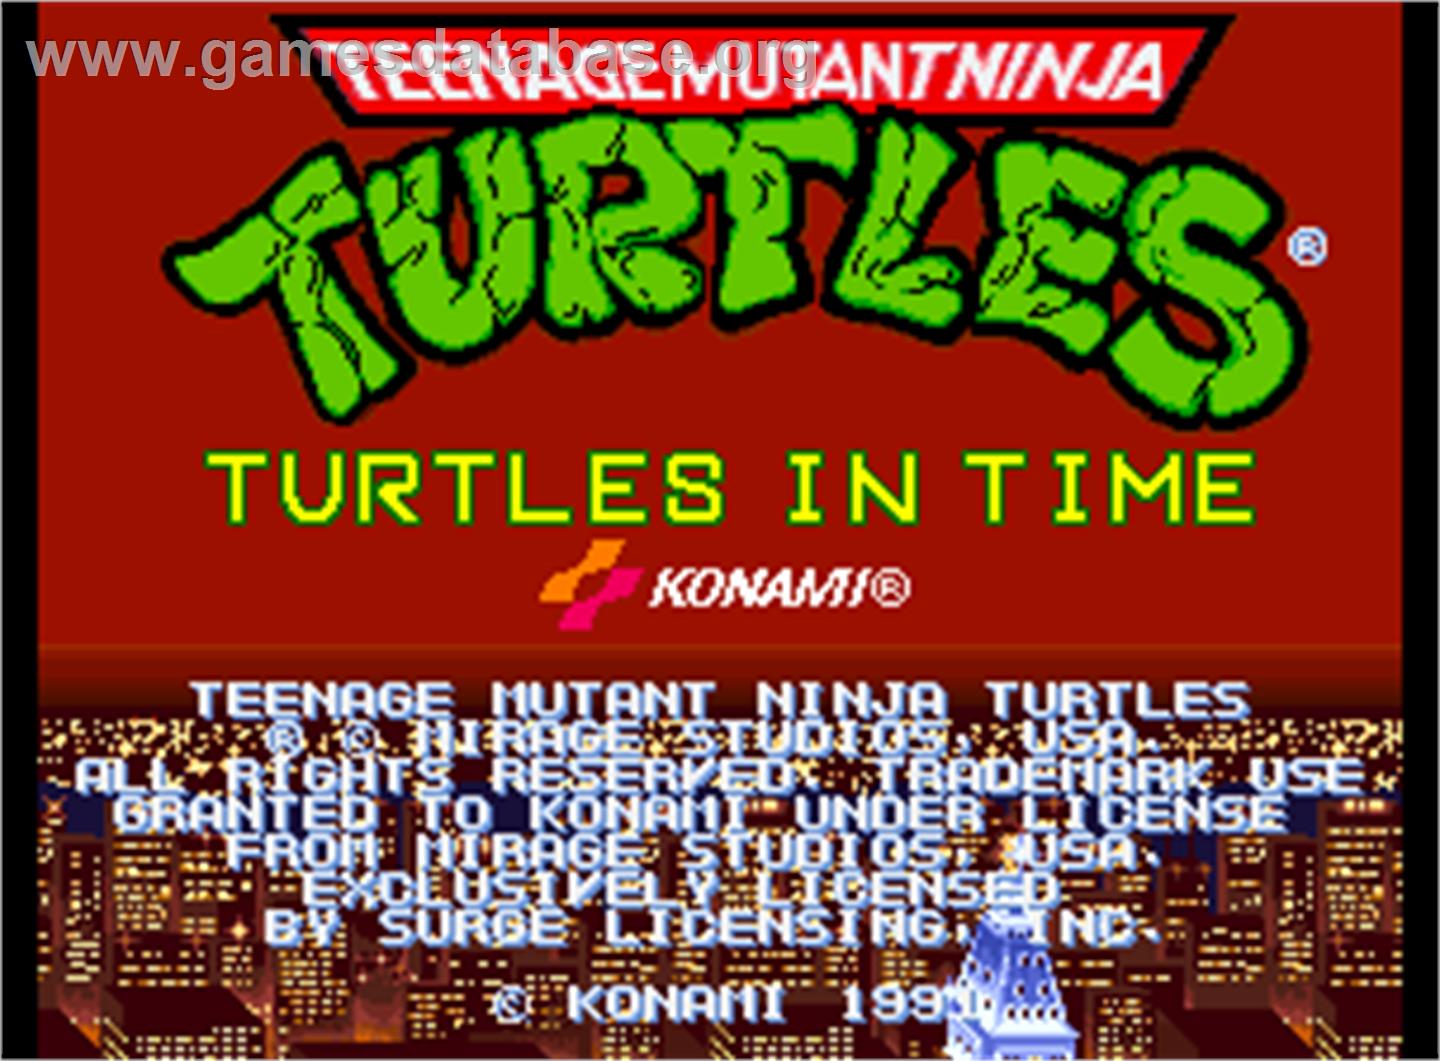 Teenage Mutant Ninja Turtles - Turtles in Time - Arcade - Artwork - Title Screen